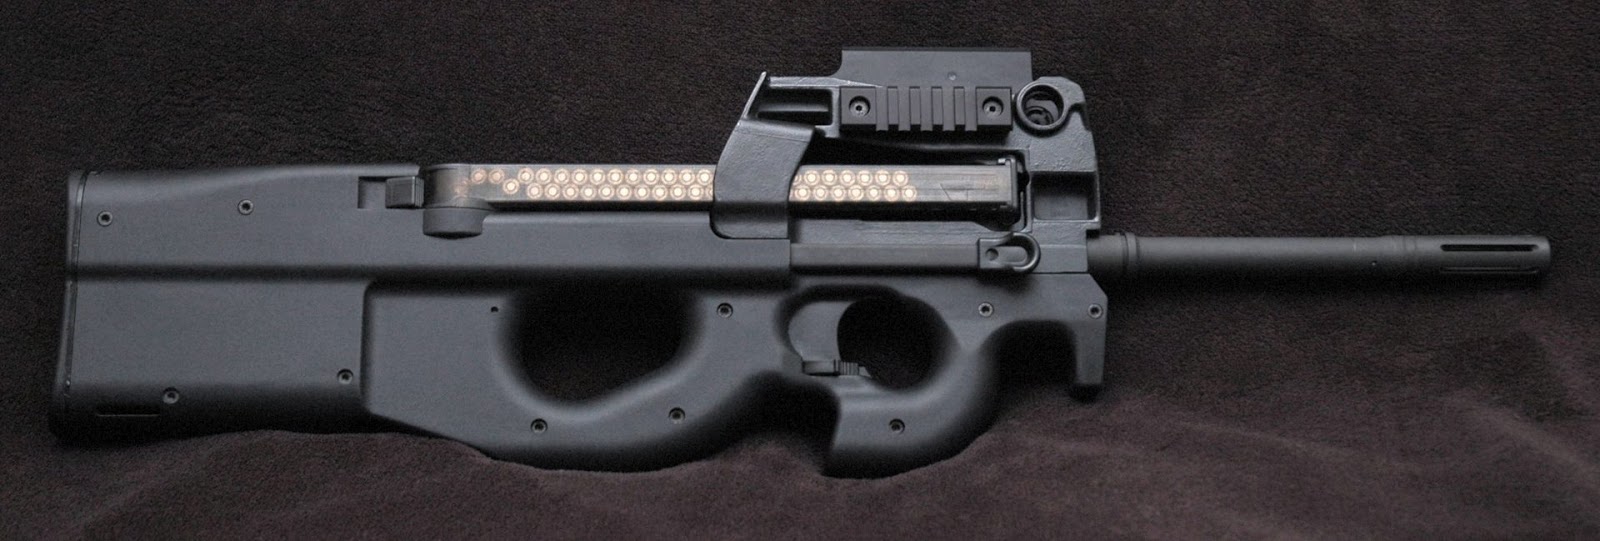 SI VIS PACEM, PARA BELLUM: L'FN P90 è un'arma da difesa personale (PDW,  personal defense weapon) progettata e prodotta dalla Fabrique Nationale  d'Herstal in Belgio